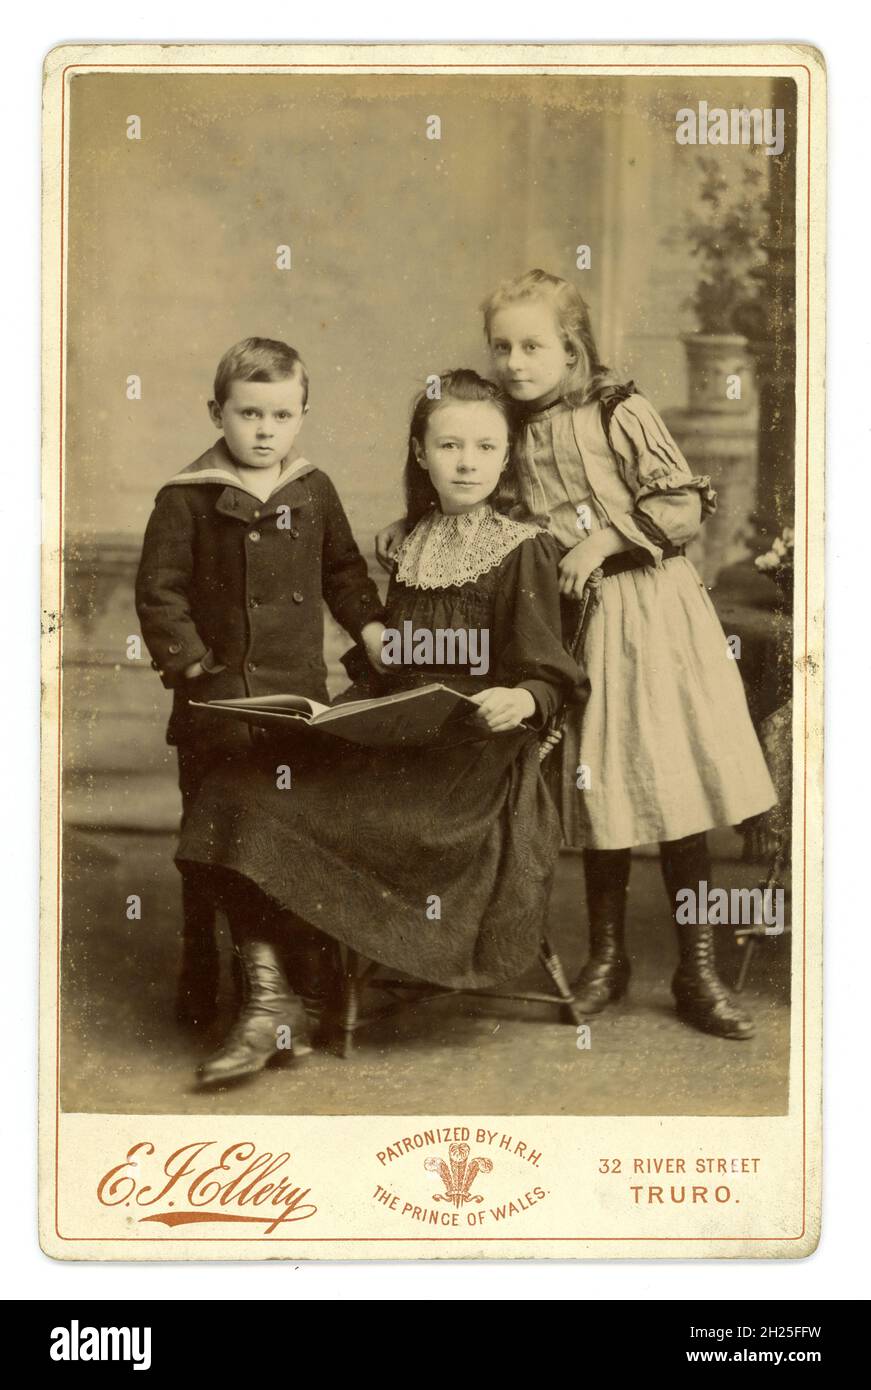 Viktorianische Kabinettkarte von 3 attraktiven jungen kornischen Kindern - nicht aus einer wohlhabenden Familie, da das Kleid des älteren Mädchens zerrissen ist - dies sind wahrscheinlich ihre Sonntagskleidung. Fotografiert von E.I. Ellery, Truro, Cornwall, U.K. dieser Fotograf gibt an, dass sein Atelier von S.R.H. Prince of Wales (später Edward V11) um 1900 bevormundet wurde. Stockfoto